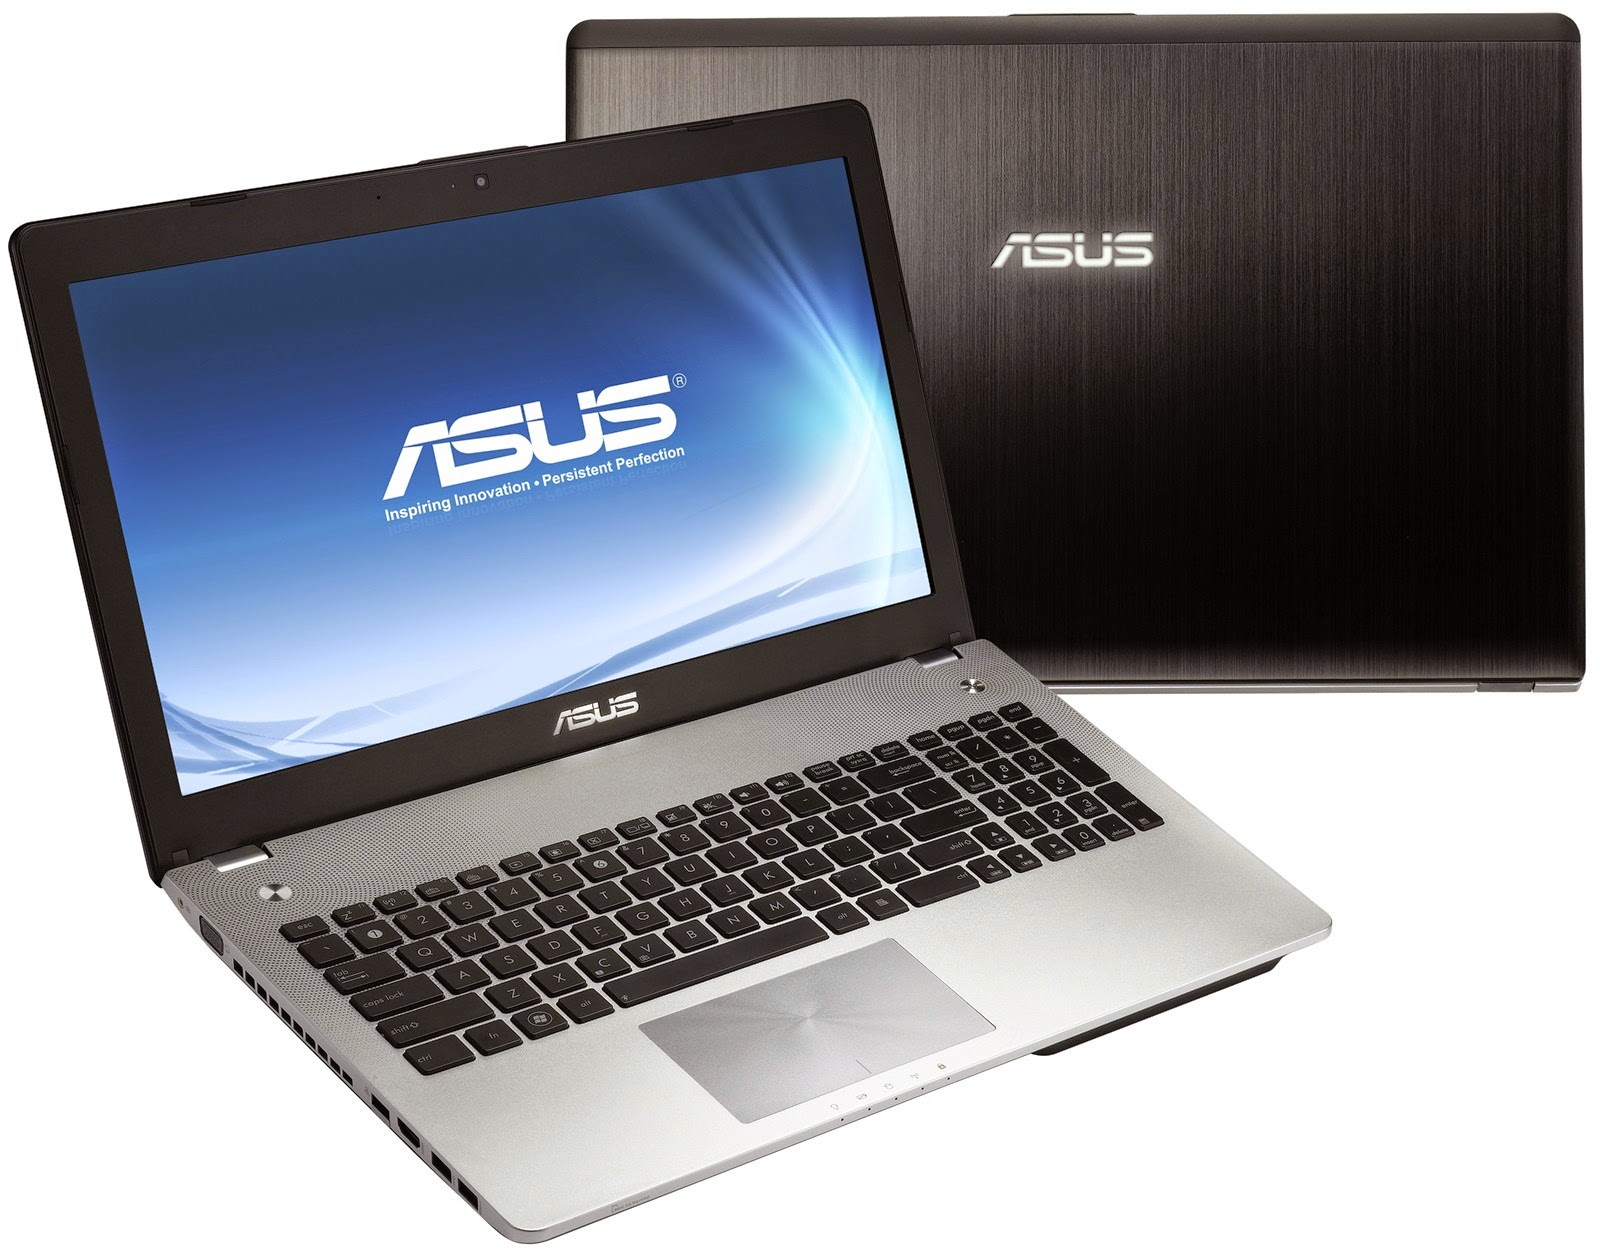 Daftar Harga Laptop Asus Terbaru Dan Spesifikasinya